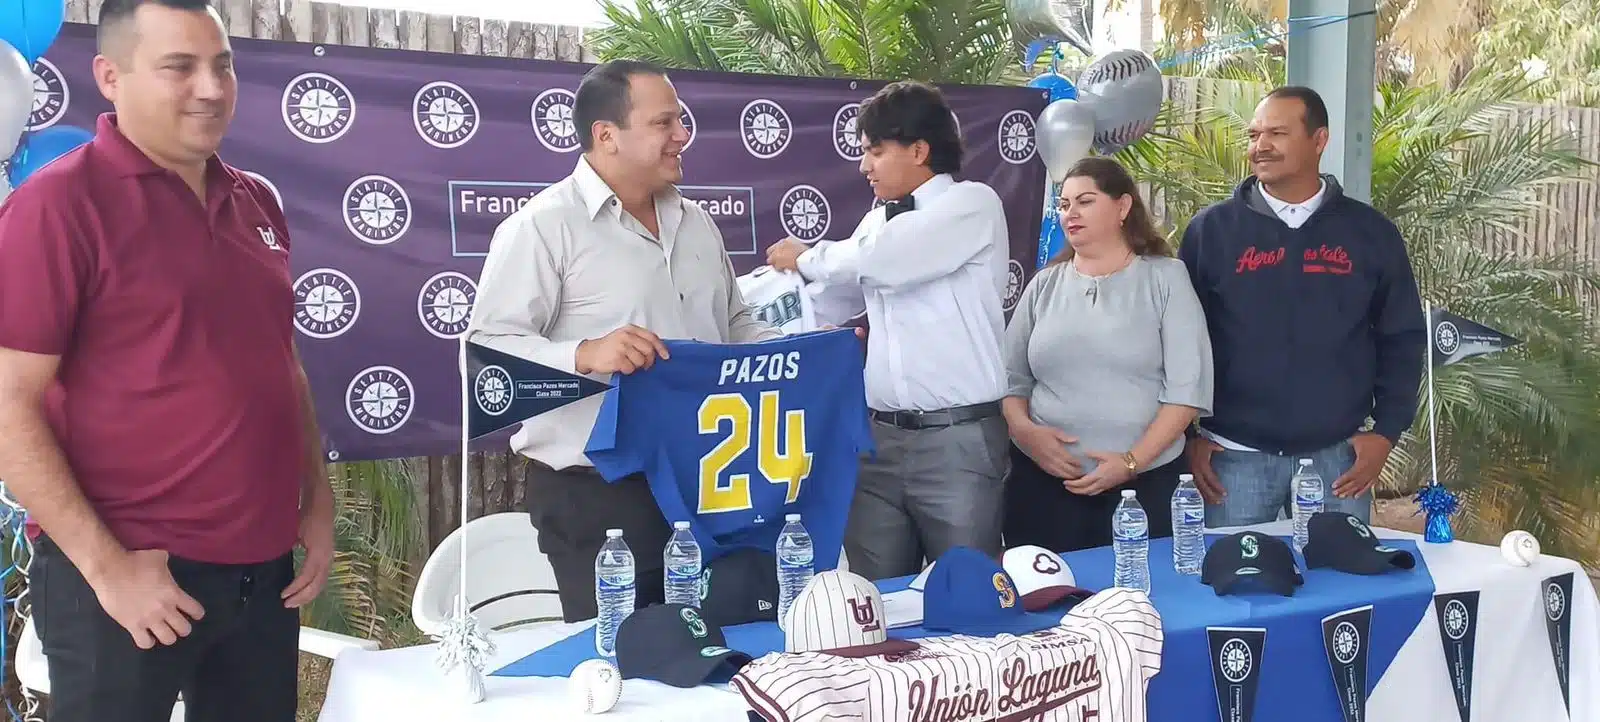 El mochitense Francisco Pazos fue firmado por los Marineros (2)